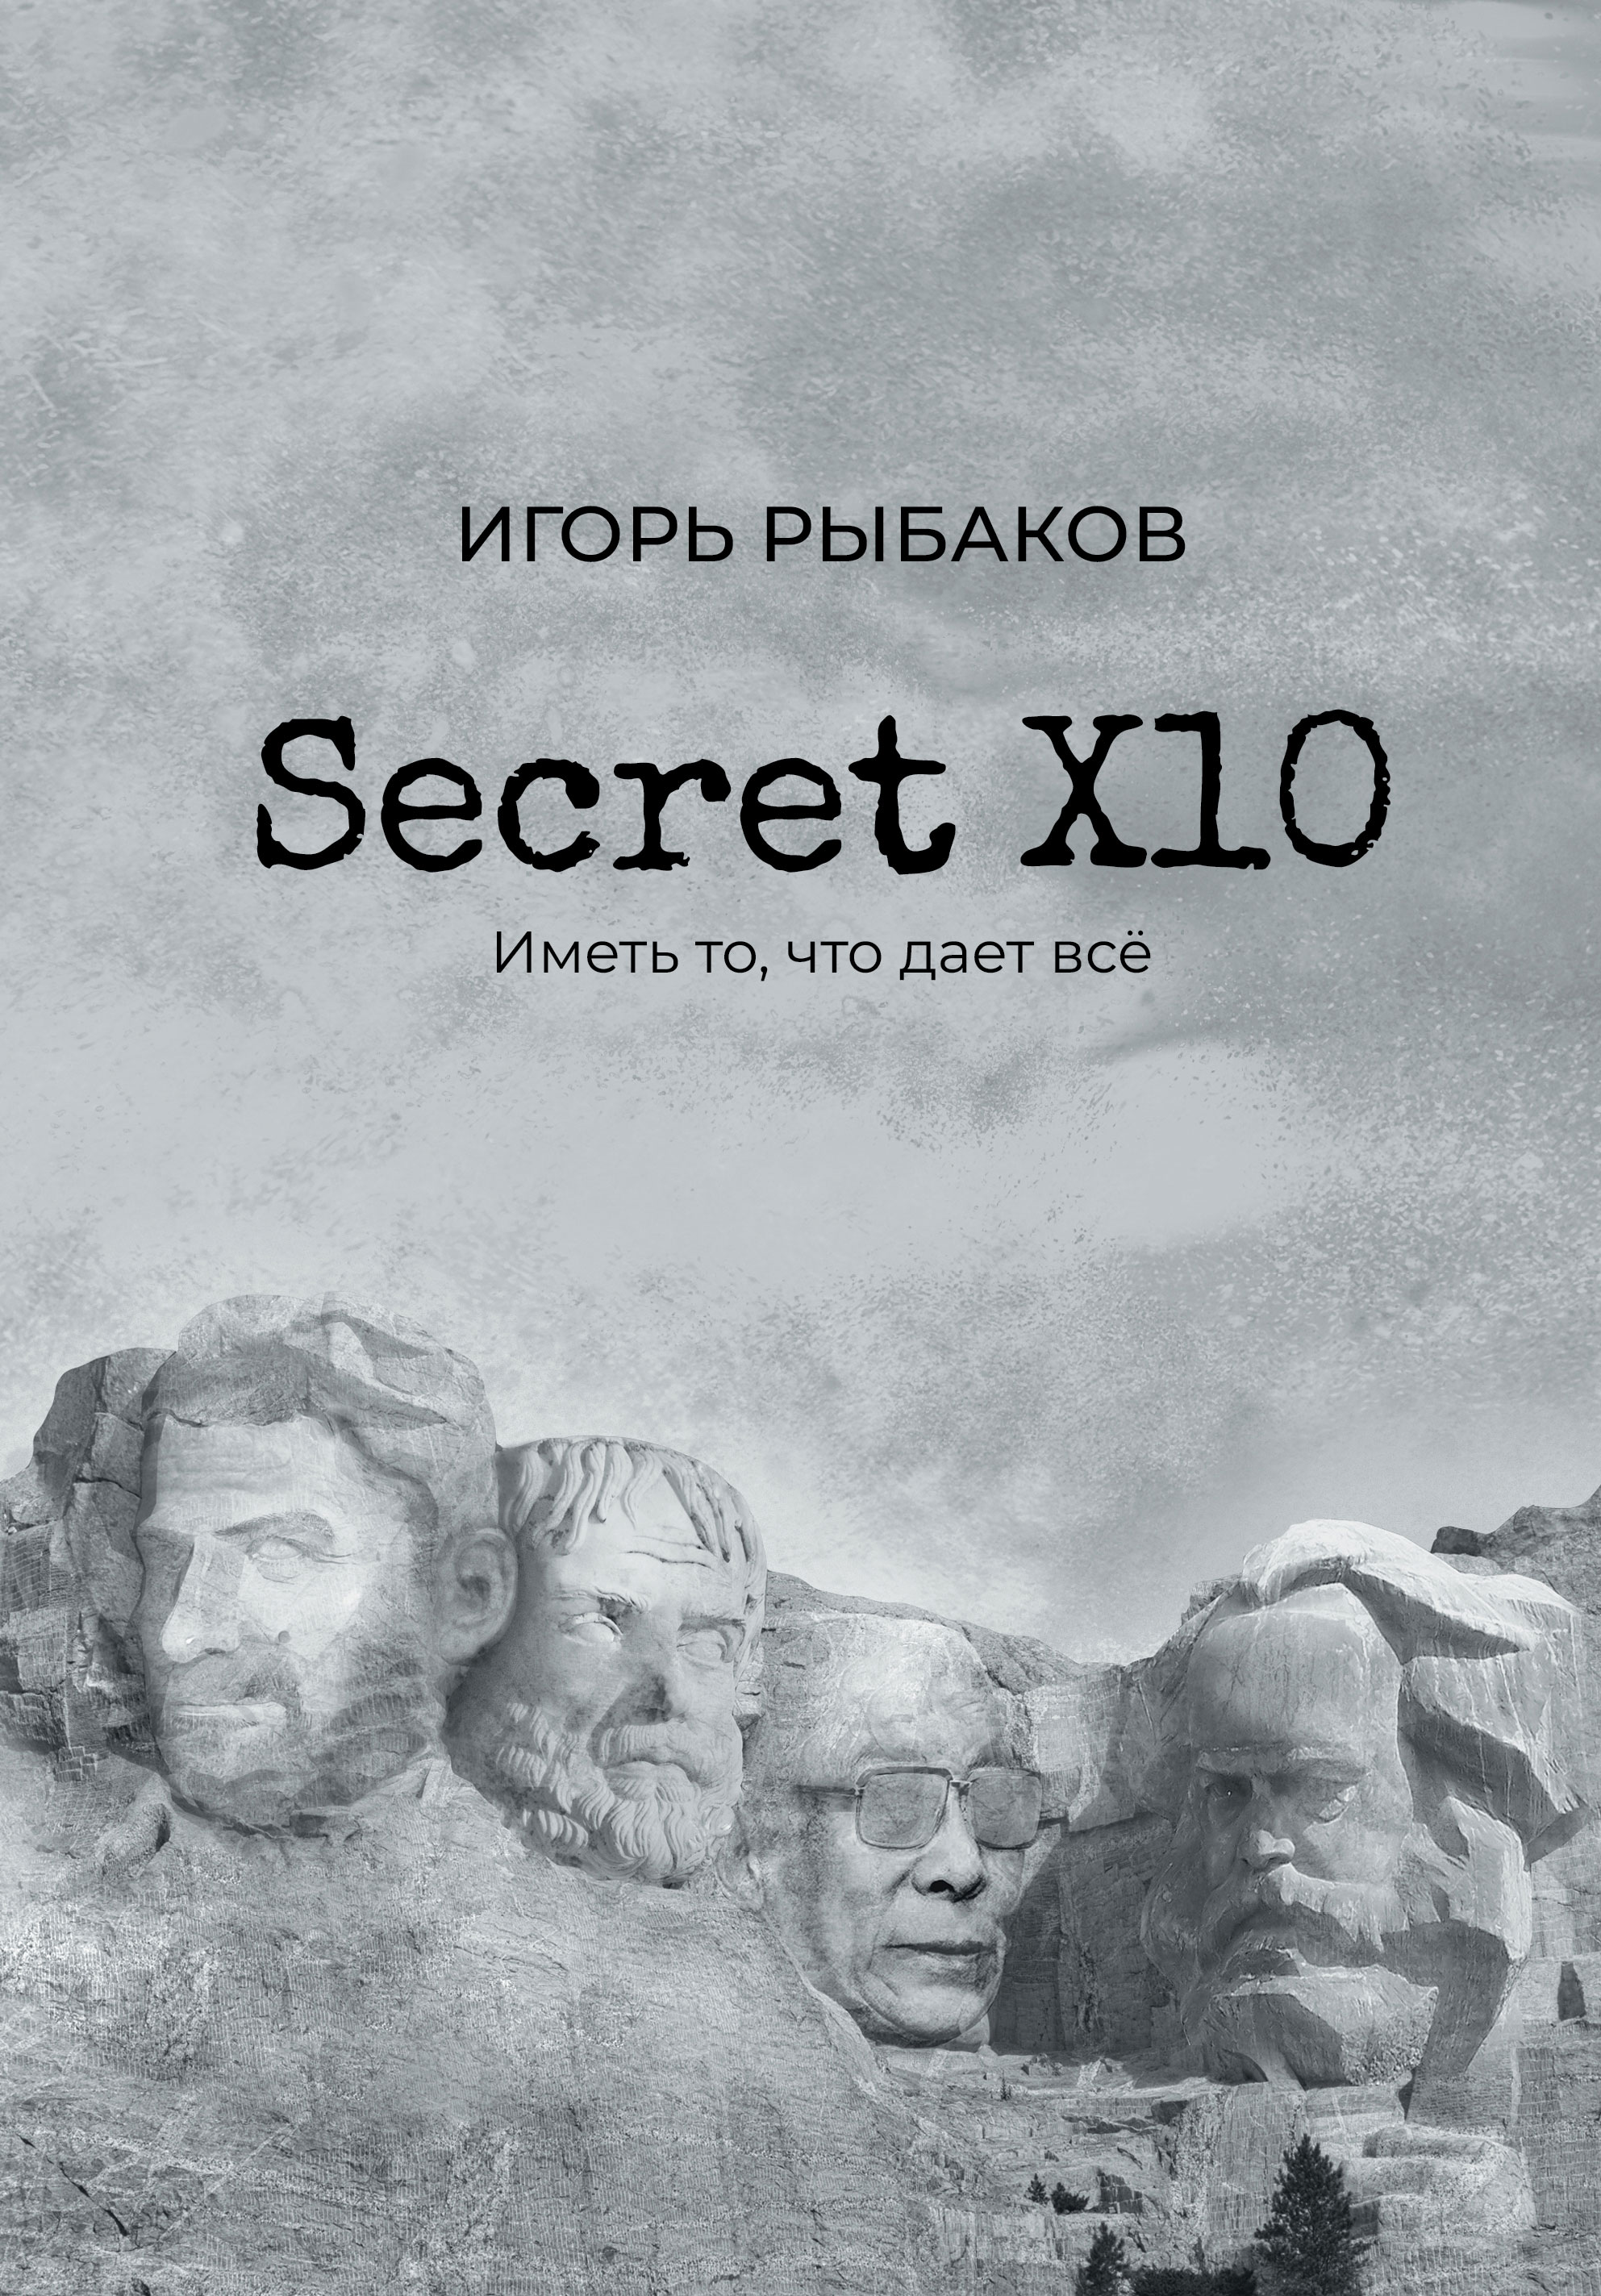 Книга Secret Х10. Иметь то, что даёт всё из серии созданная Игорь Рыбаков может относится к жанру лидерство, личная эффективность. Стоимость электронной книги Secret Х10. Иметь то, что даёт всё с идентификатором 66851653 составляет 499.00 руб.